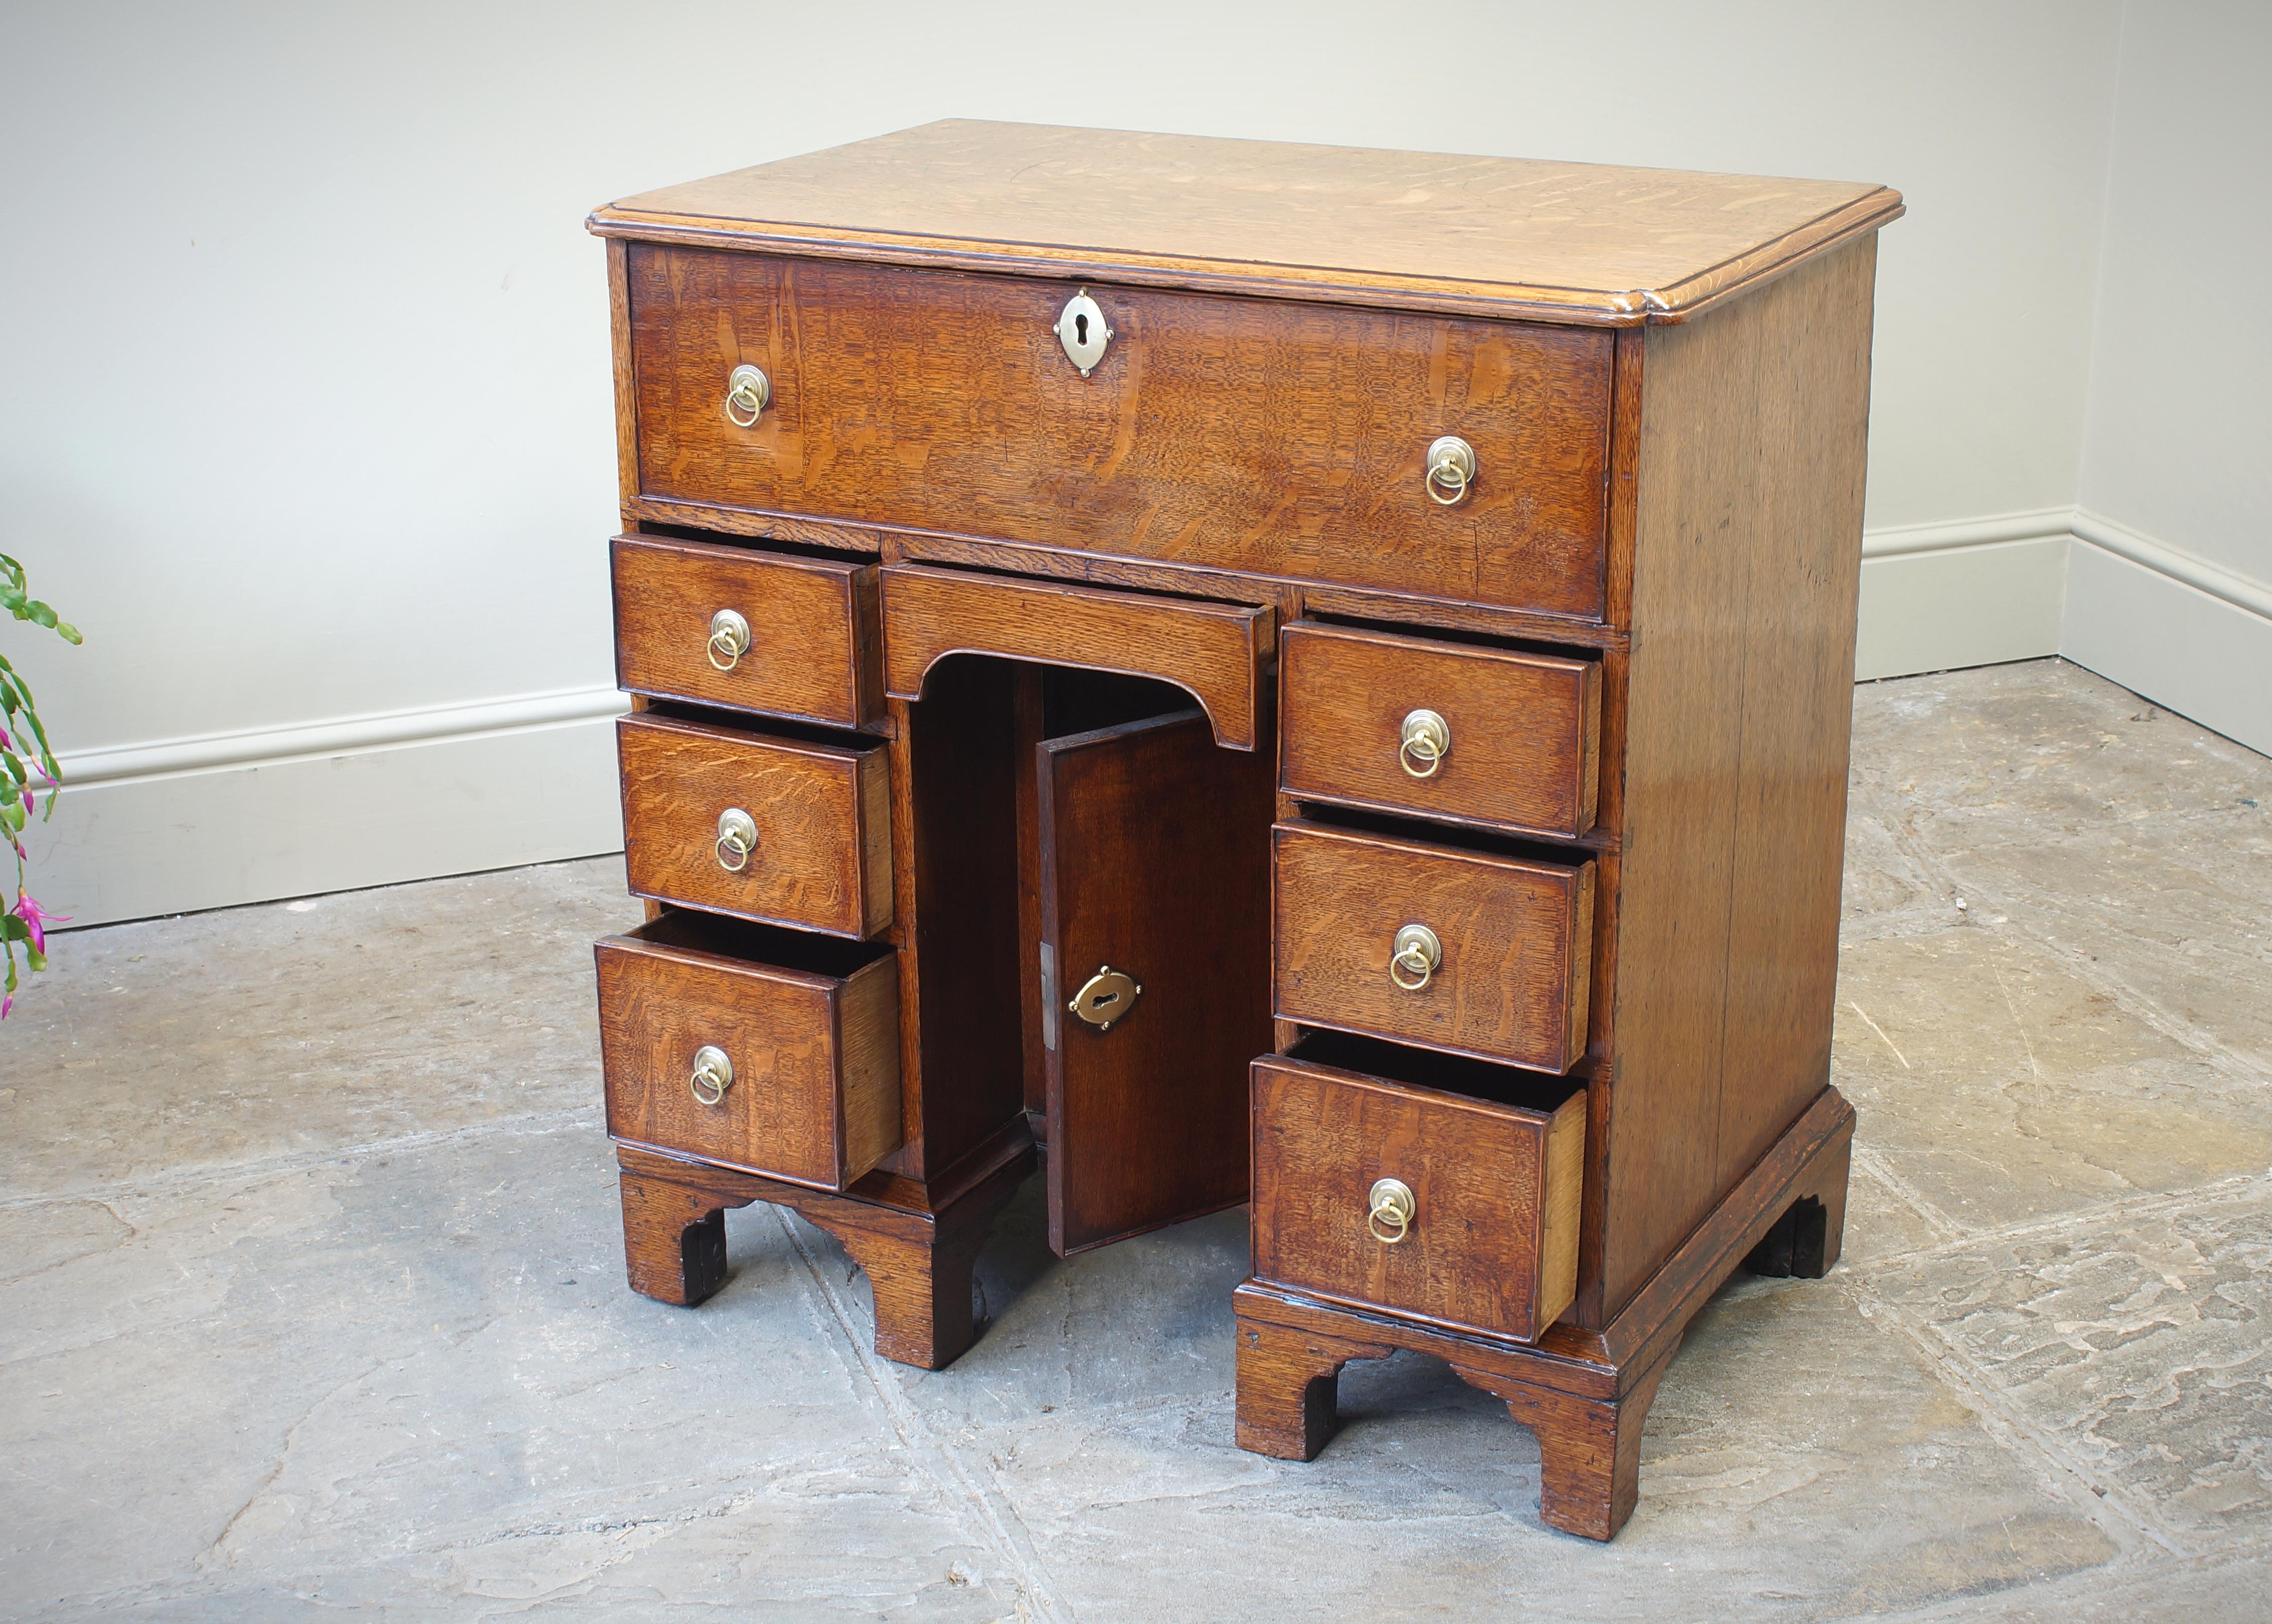 Ein kleiner georgianischer Eichen-Sekretär-Knieloch-Schreibtisch mit einer schönen hellen Honigfarbe. Der Schreibtisch ist aus hochwertigem, viertelseitig gesägtem Eichenholz gefertigt, und die Tischplatte weist ein kühnes, einspringendes Eckdetail